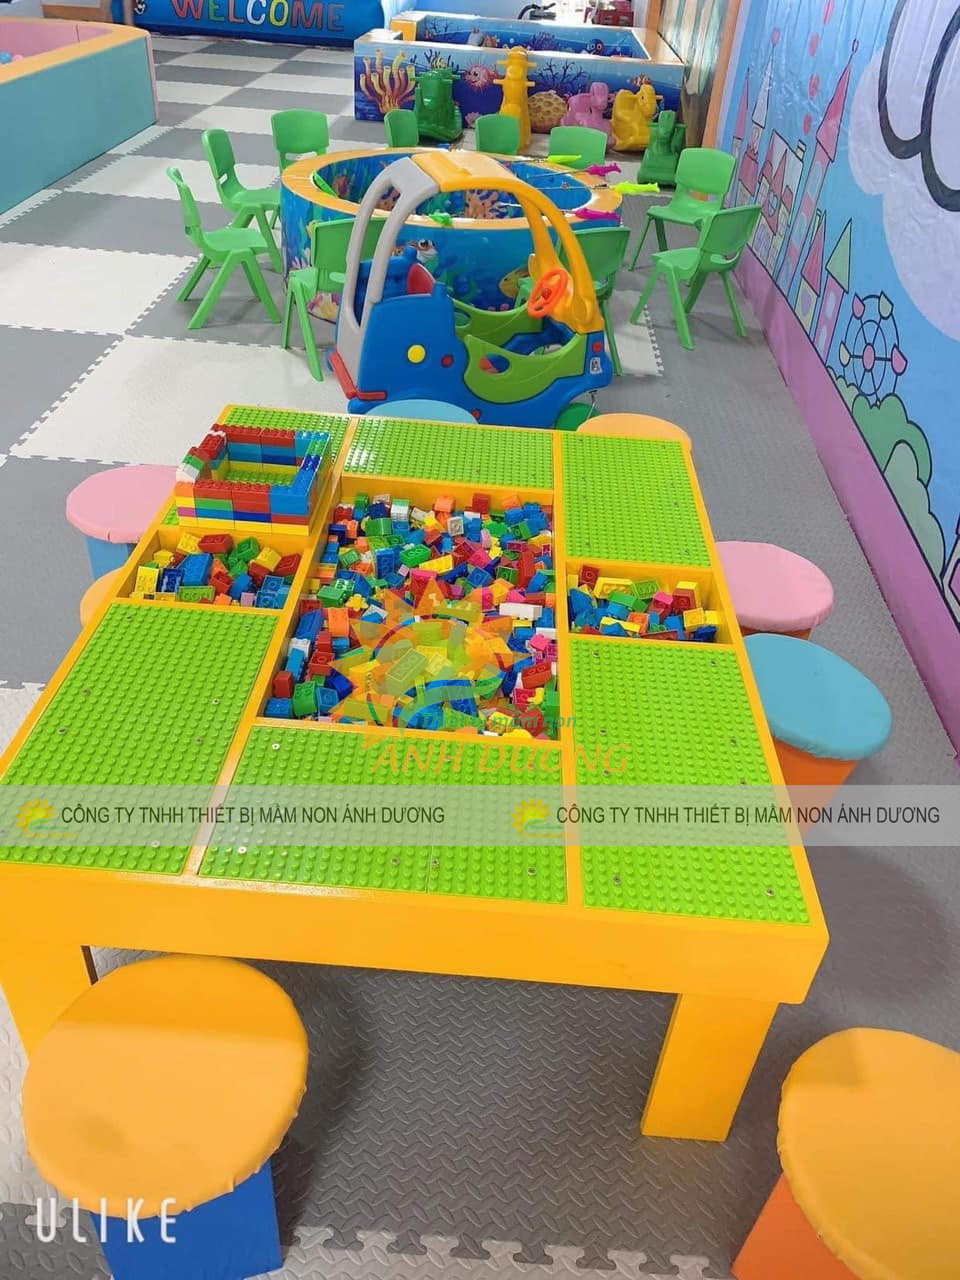 Bàn chơi xếp hình lego trẻ em cho khu vui chơi trong nhà